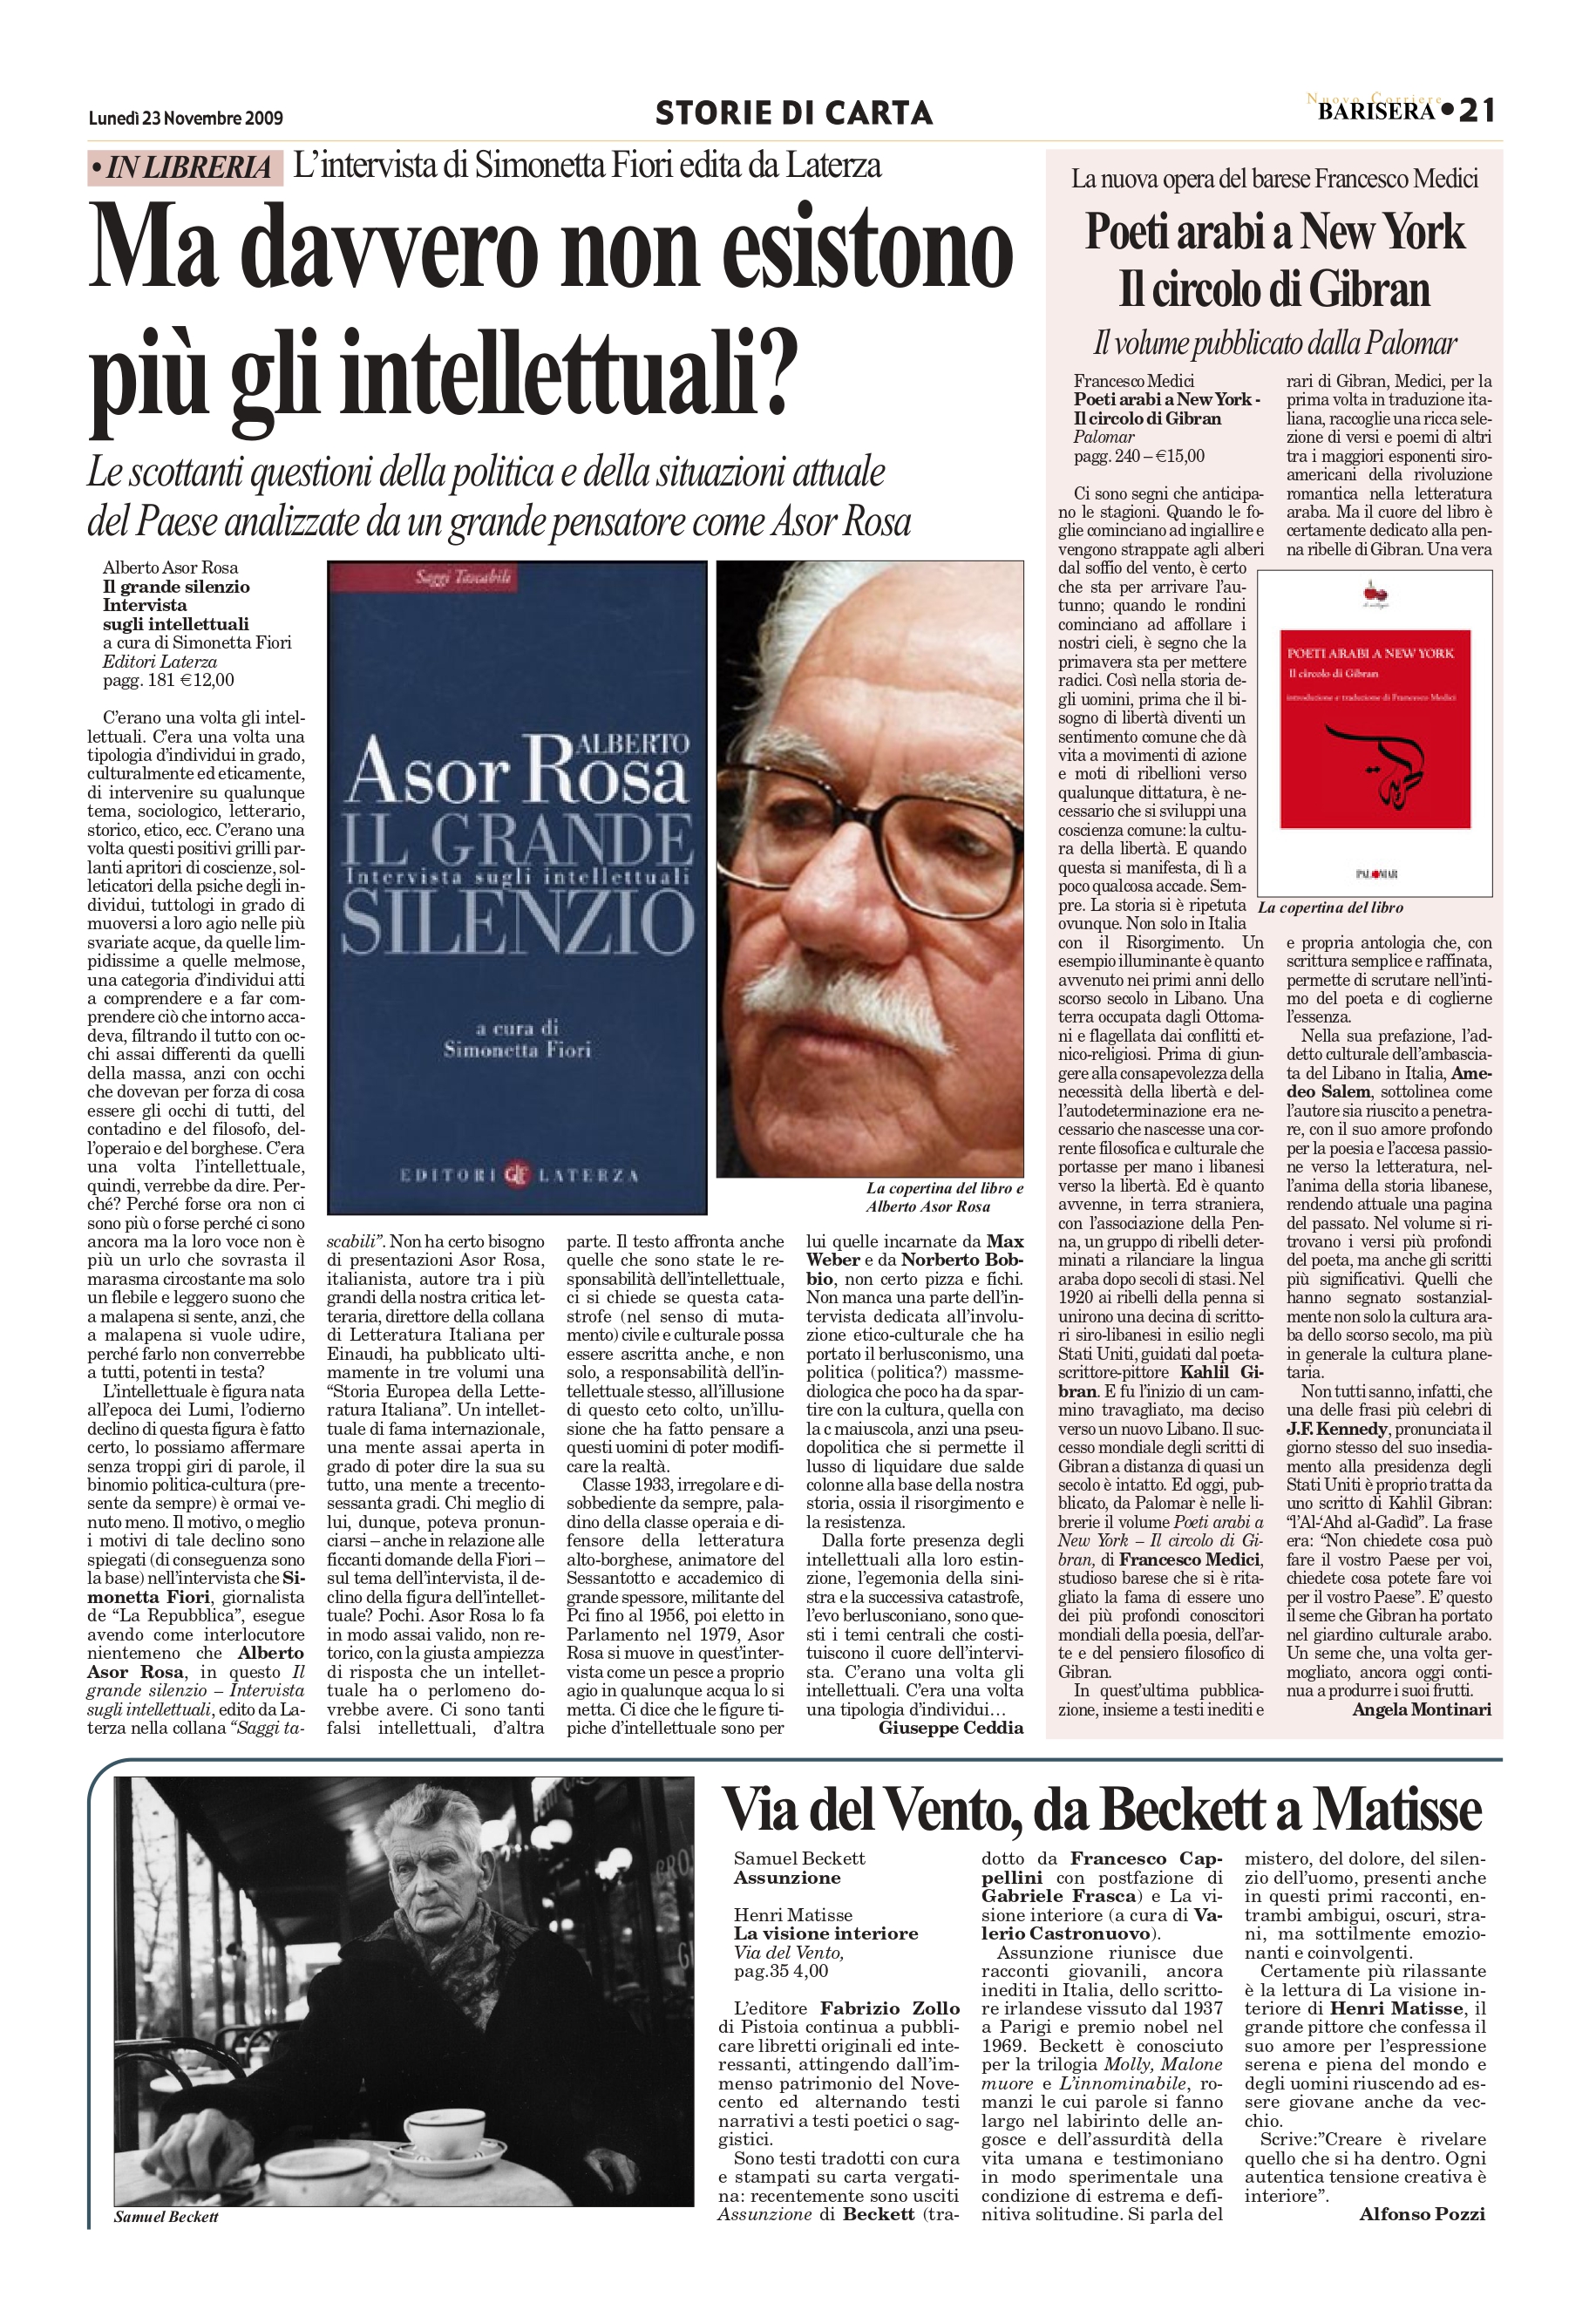 Angela Montinari, "Poeti arabi a New York: Il circolo di Gibran", BariSera, Nov 23, 2009, p. 21 (review)